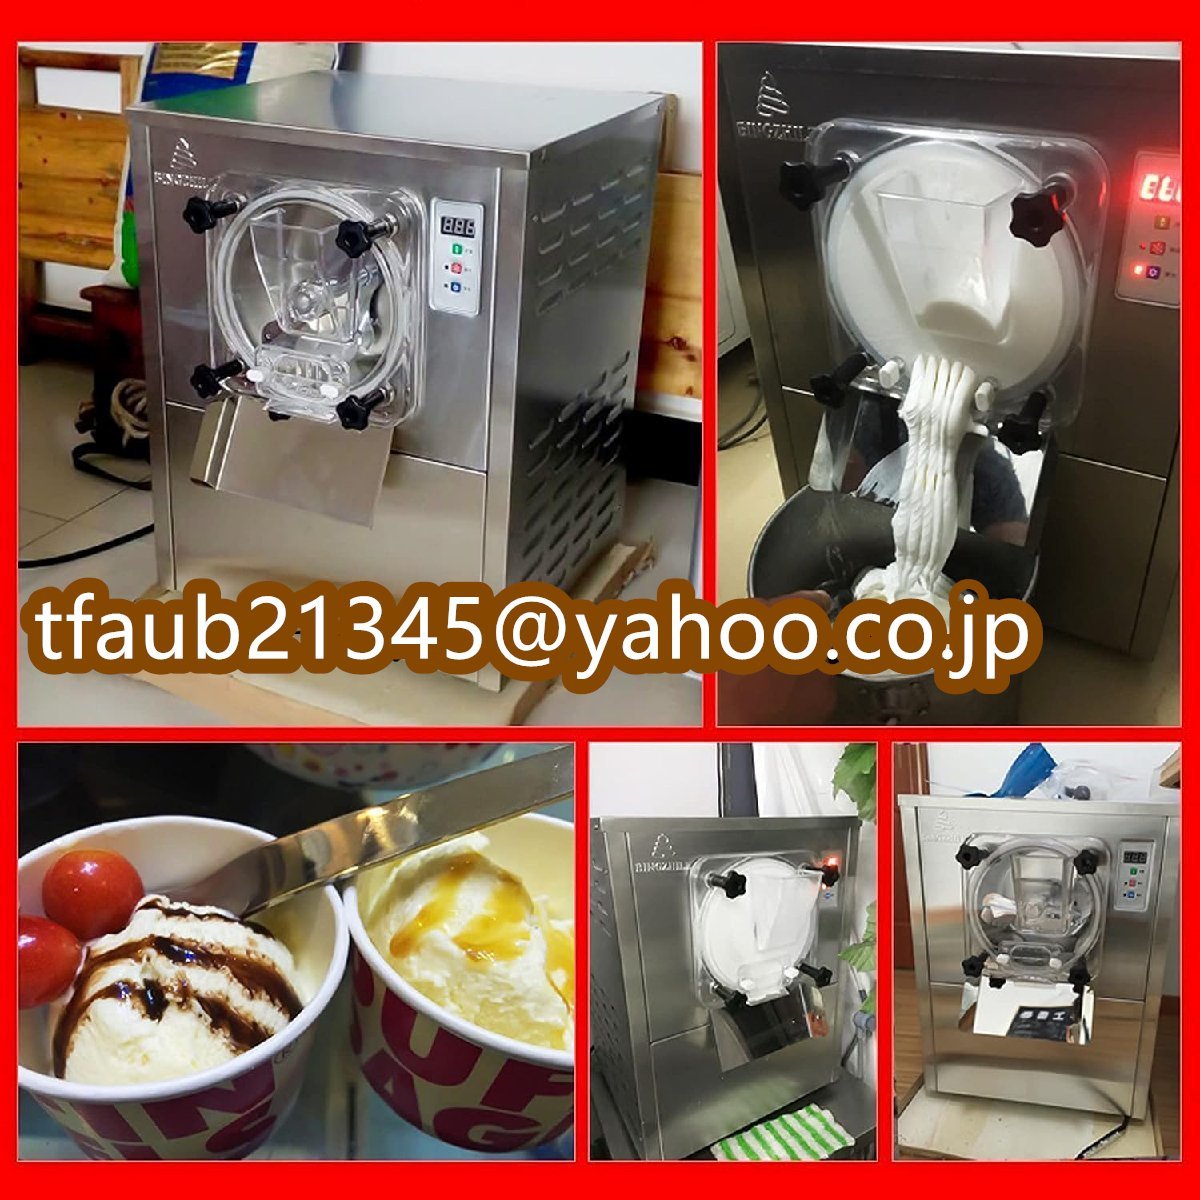 アイスクリームメーカーアイスクリーム製造機、ステンレス鋼フローズンヨーグルトおよびシャーベットマシン、1400W 20L/h自動洗浄_画像4